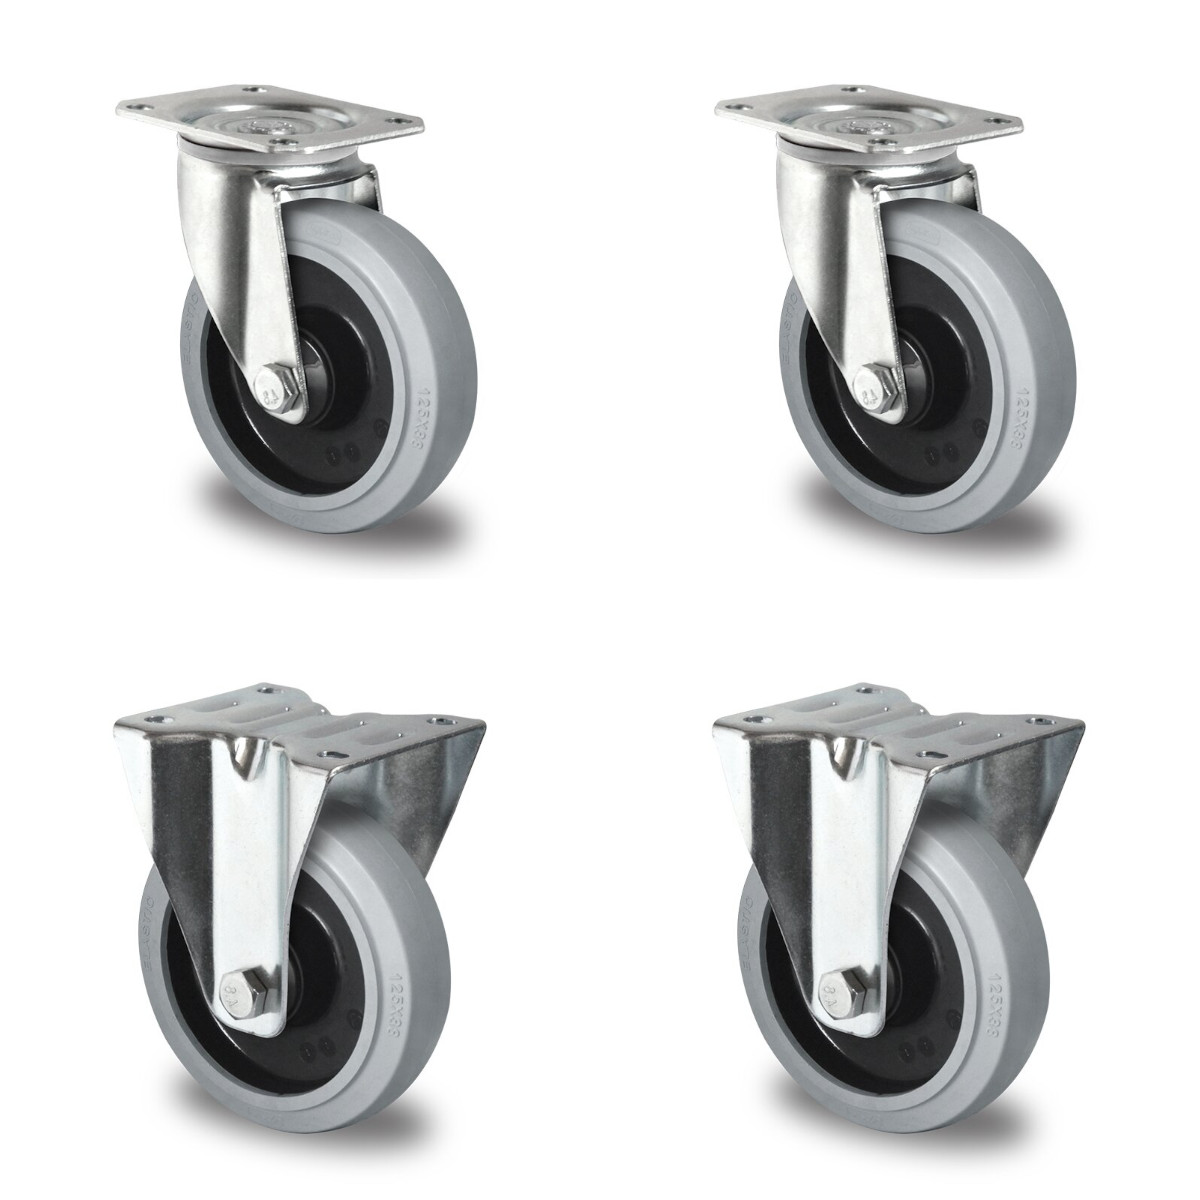 2 Lenkrollen und 2 Bockrollen für Rollbehälter im Durchmesser 125 mm mit Lauffläche aus grauem Elastik und Polyamid-Felge